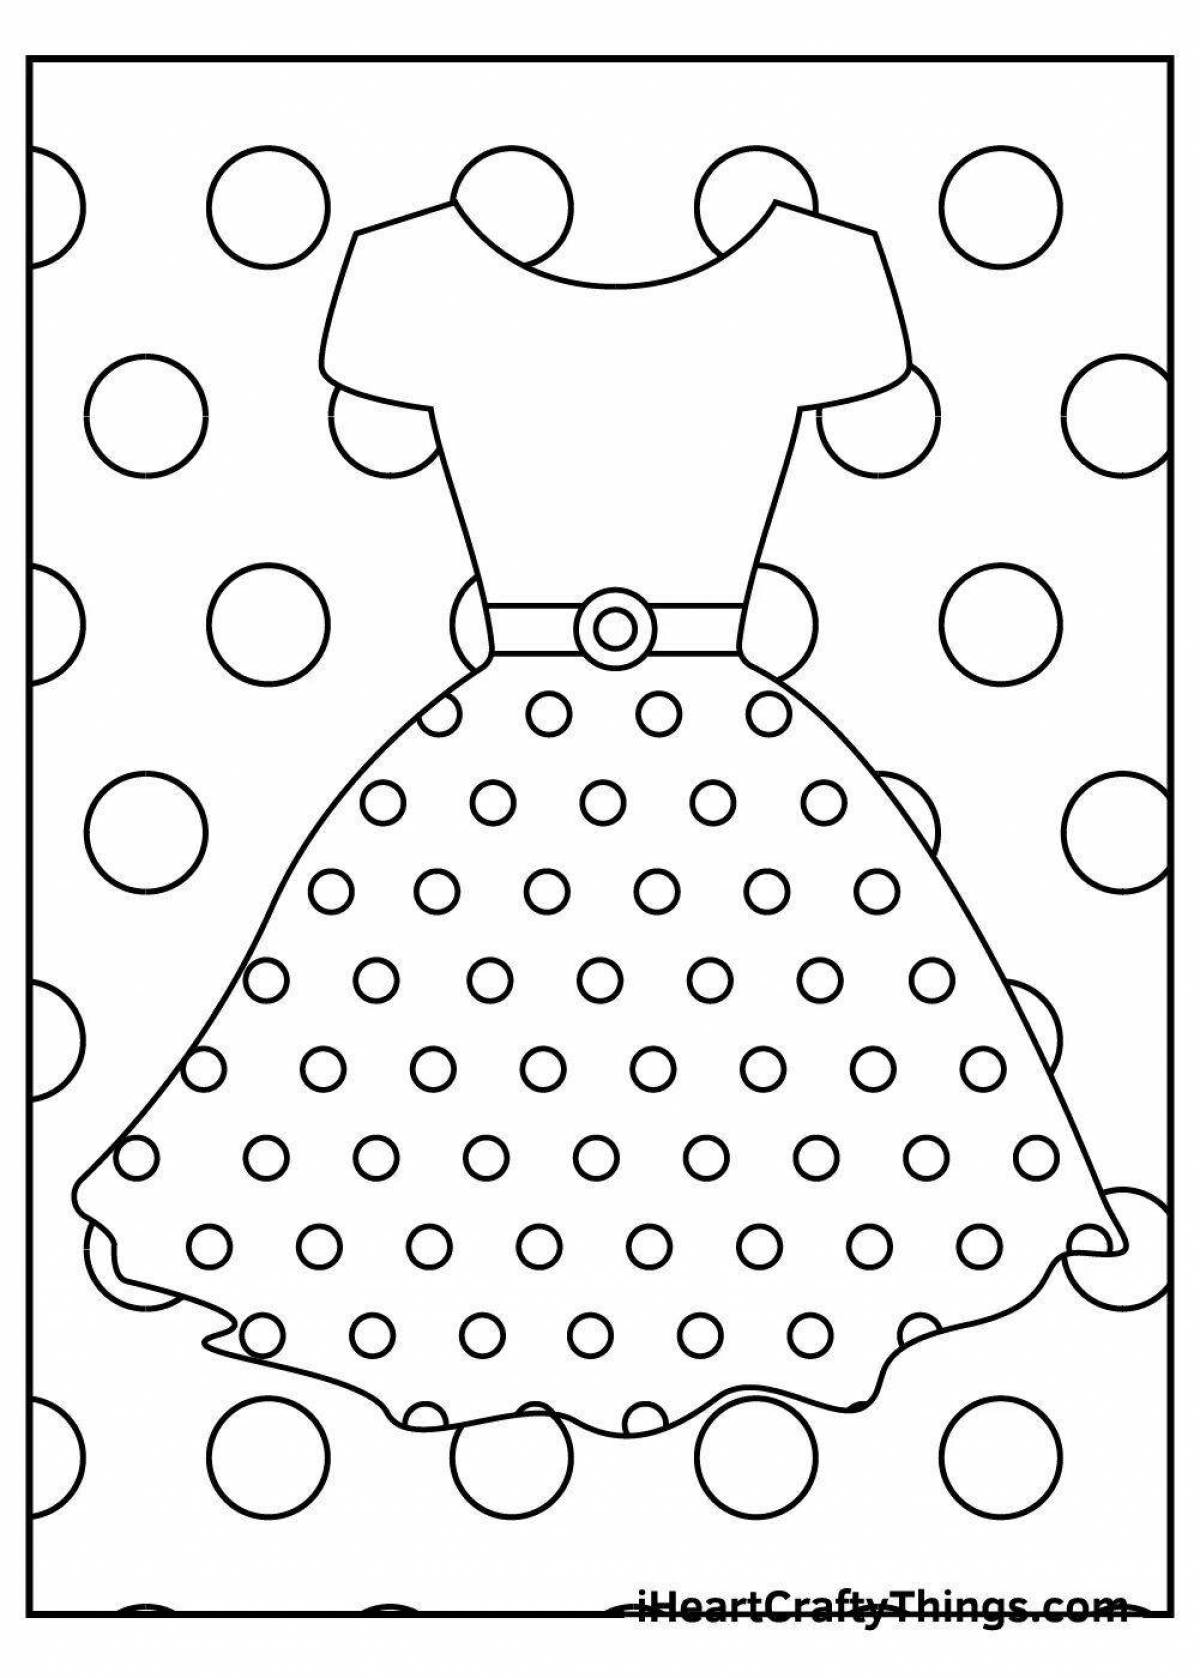 Раскраска яркое кукольное платье для детей 4-5 лет